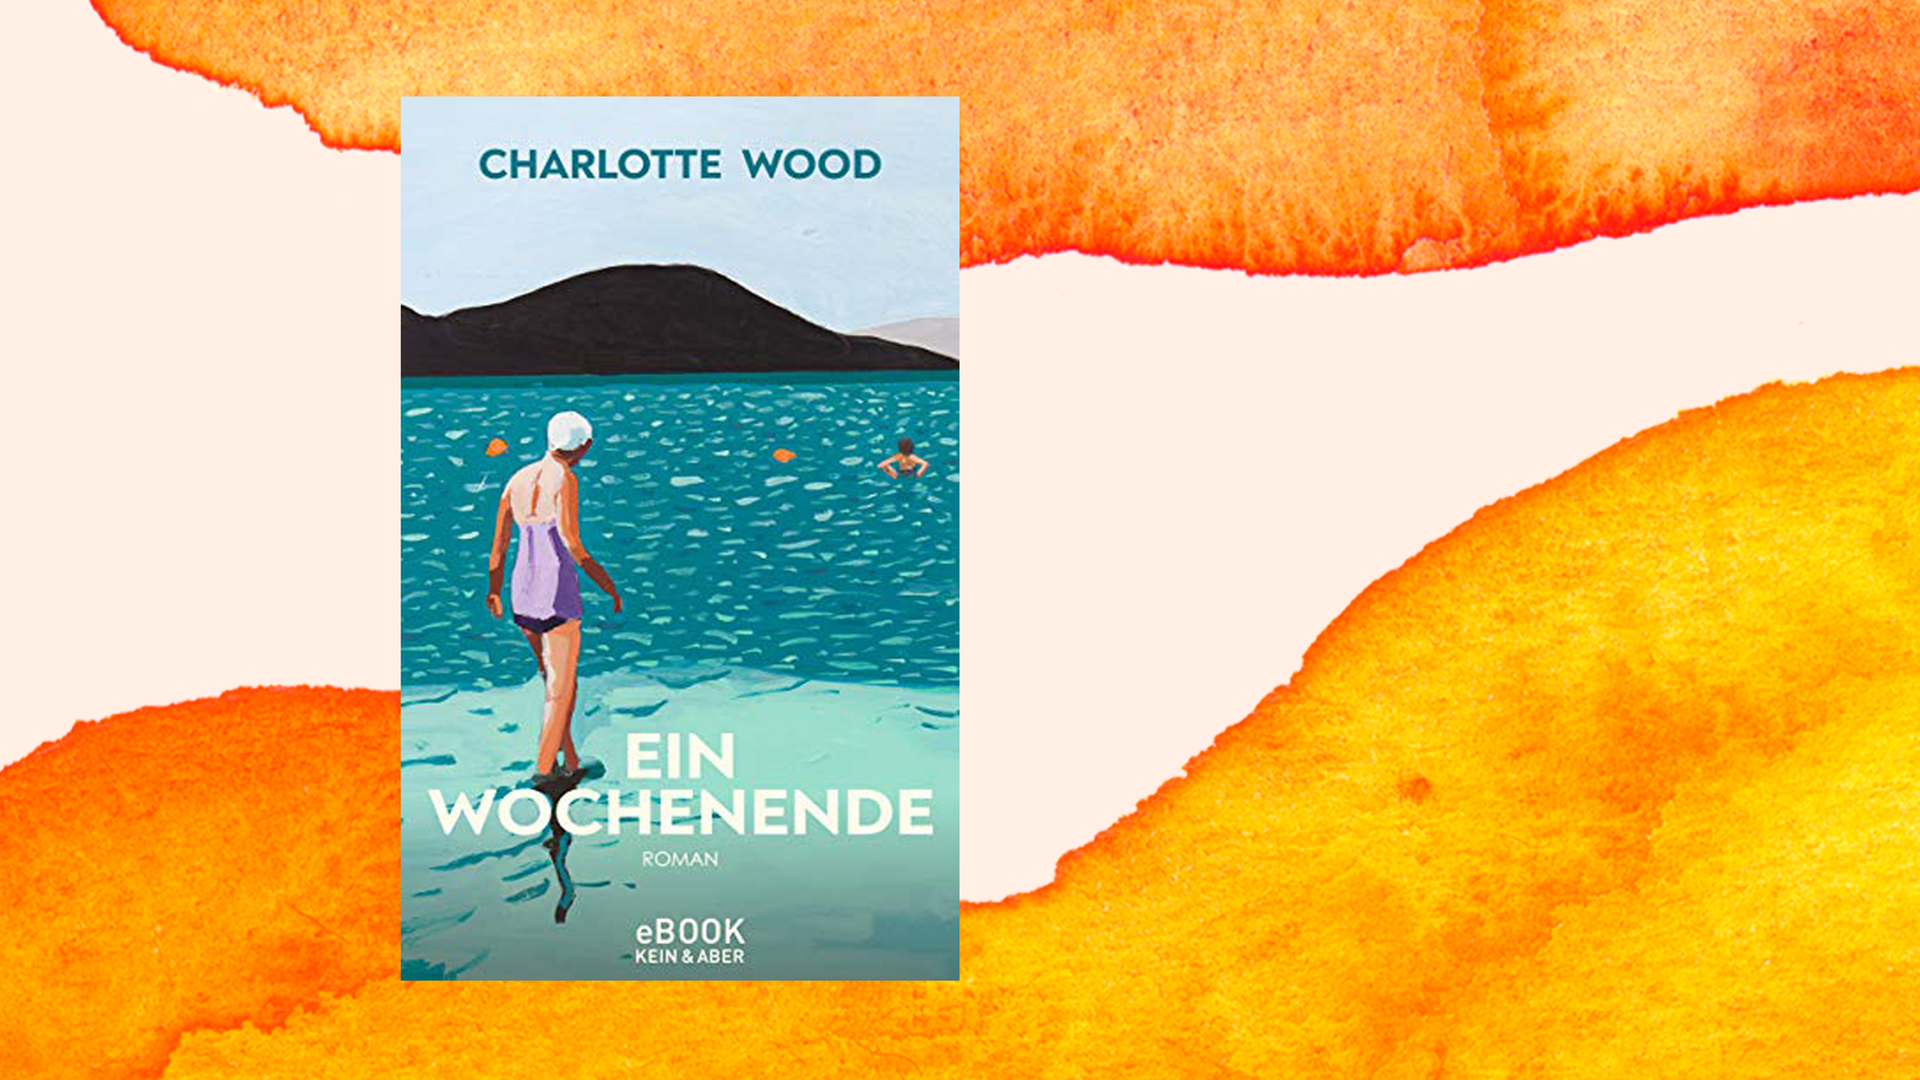 Buchcover von Charlottes Woods "Ein Wochenende" vor orangefarbenem Aquarellhintergrund.